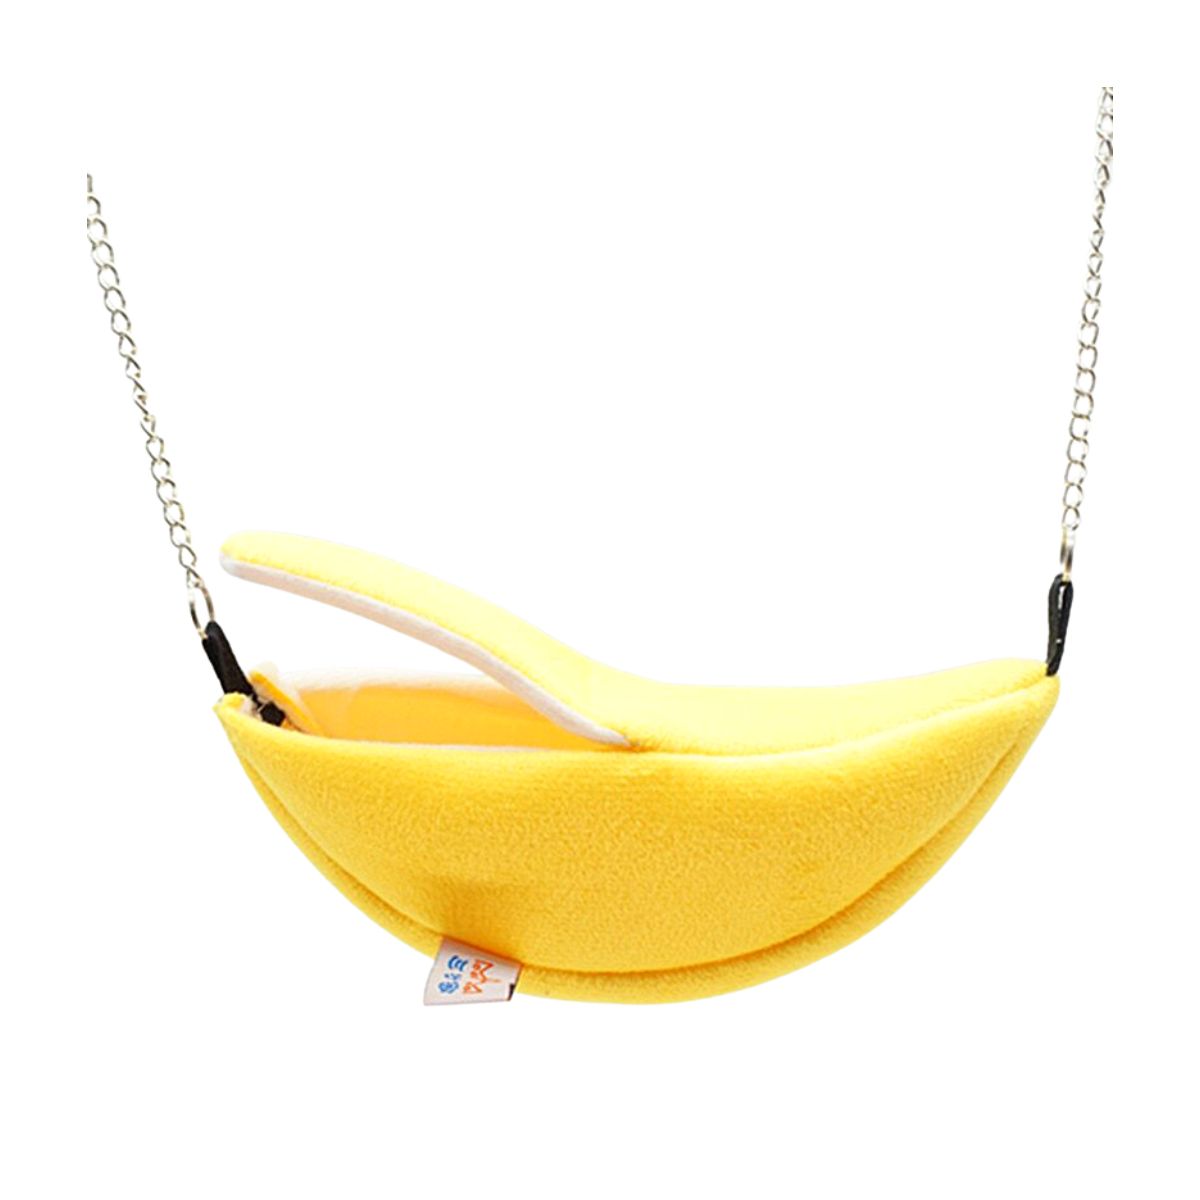 Banana Cama